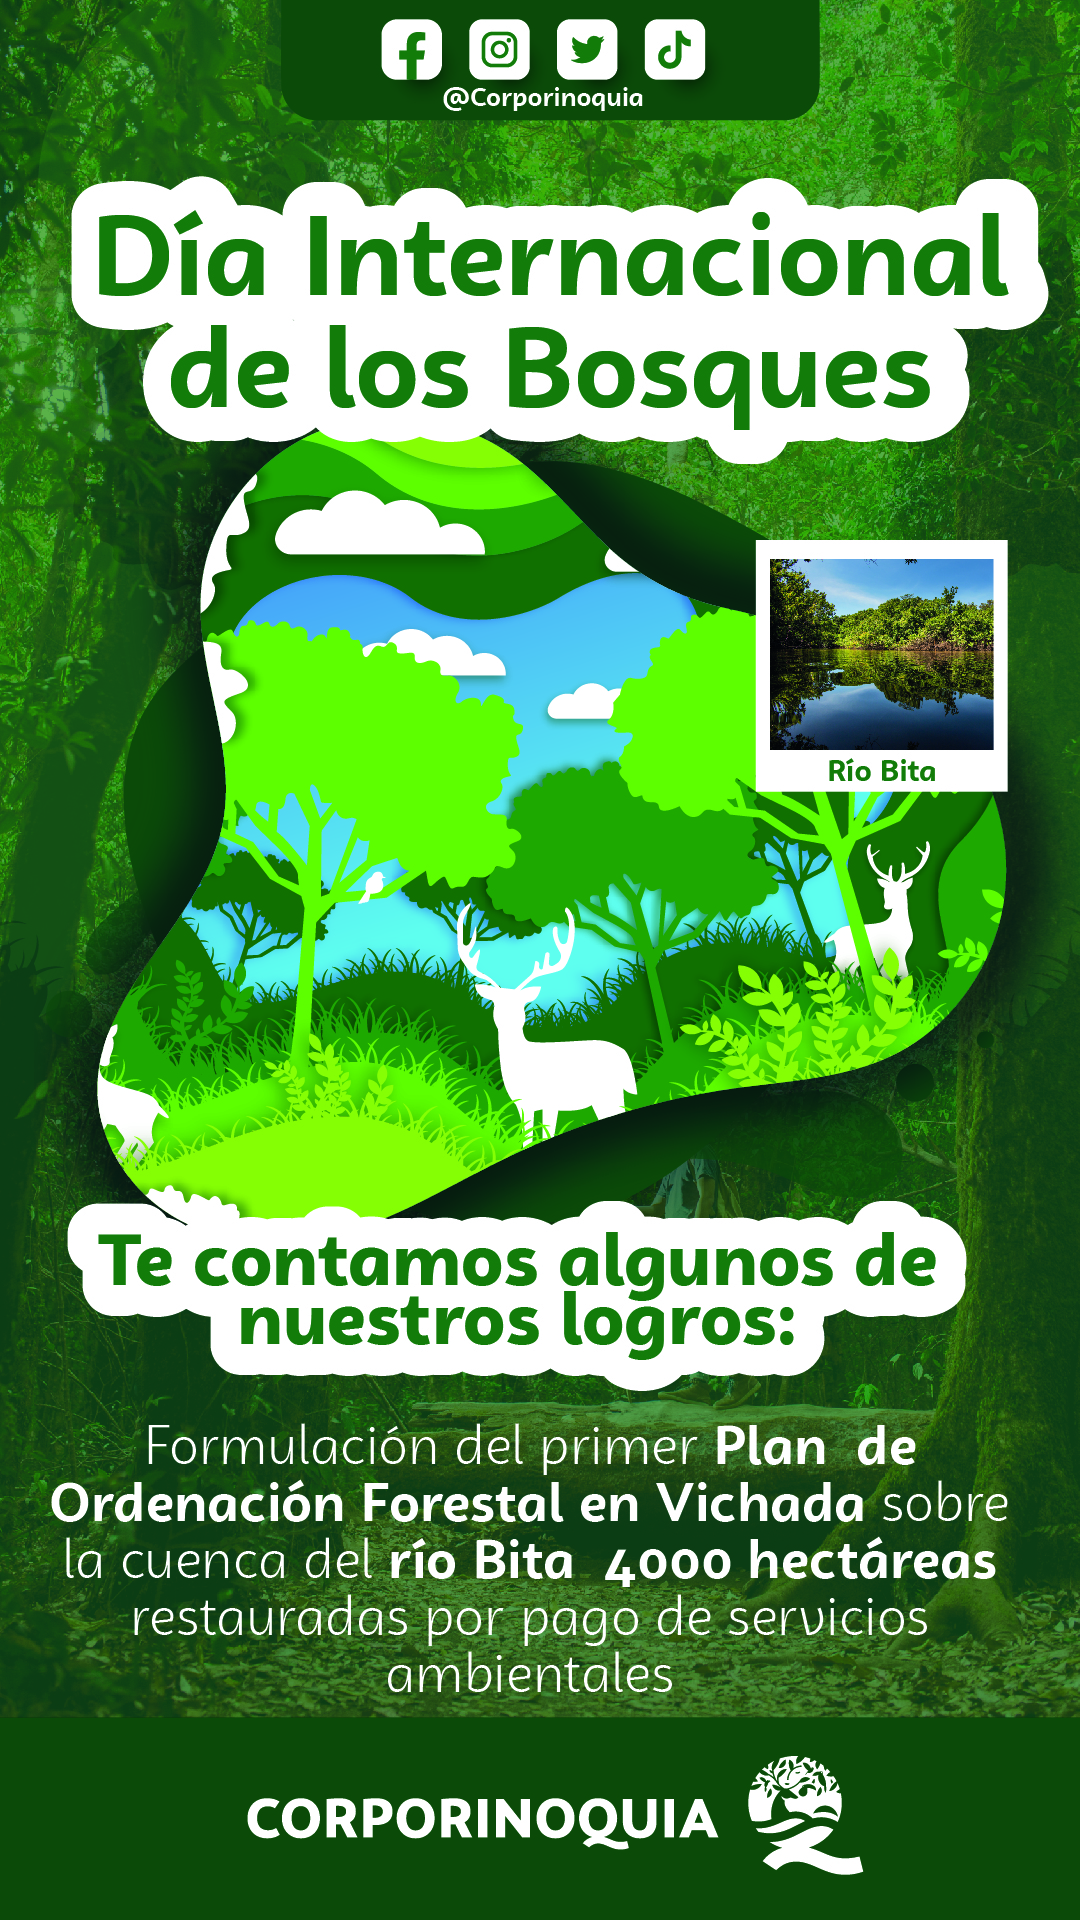 Día Mundial de la Conservación de los Bosques, Corporinoquia mantiene acciones